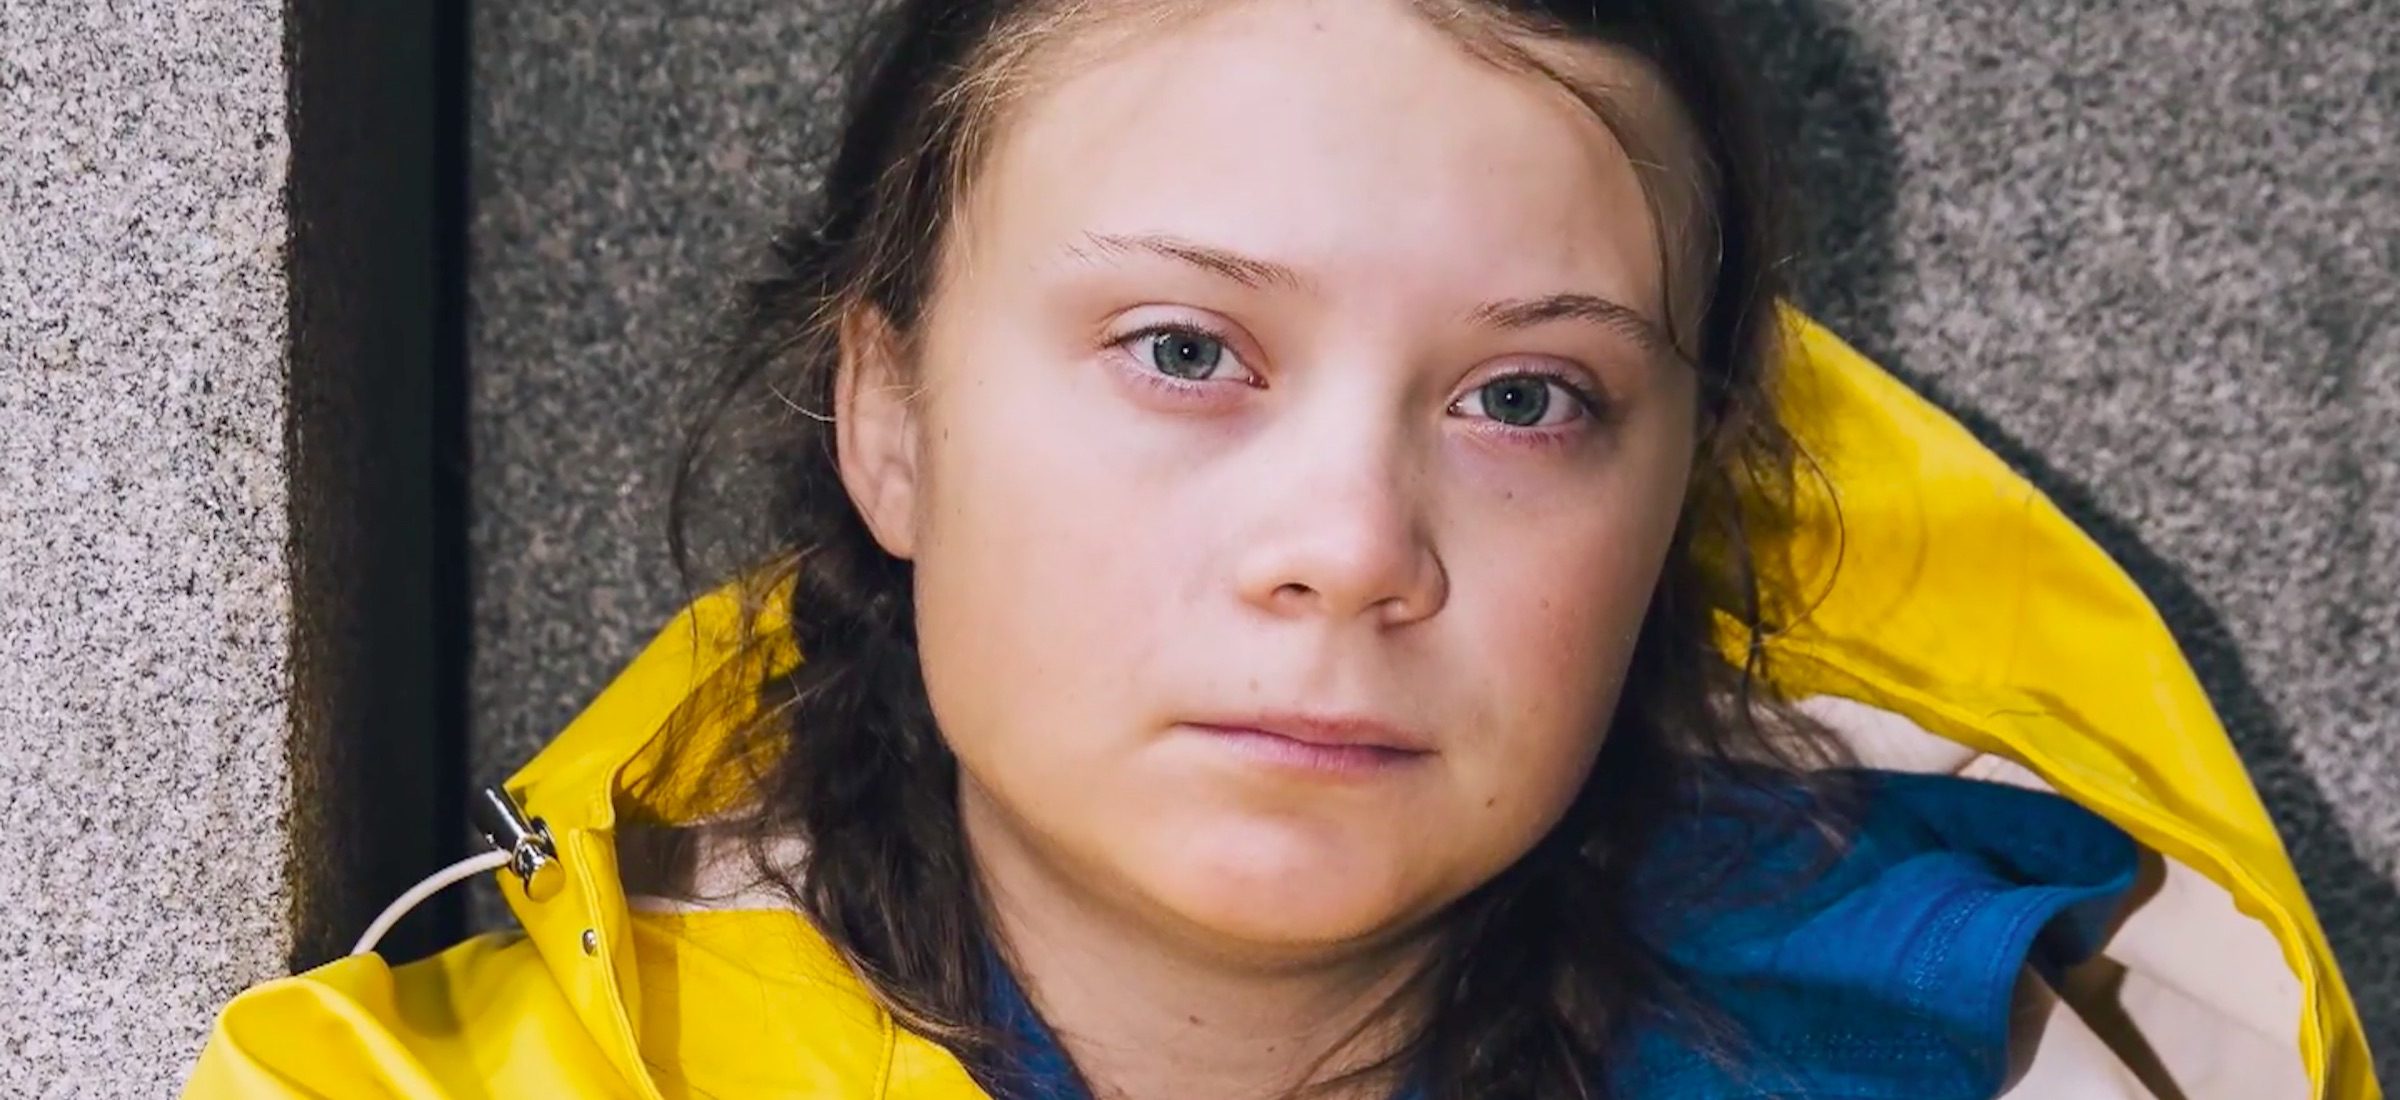 Du magst Greta Thunberg auch nicht? Schau dir heute dieses Video an und du könntest deine Meinung ändern 181